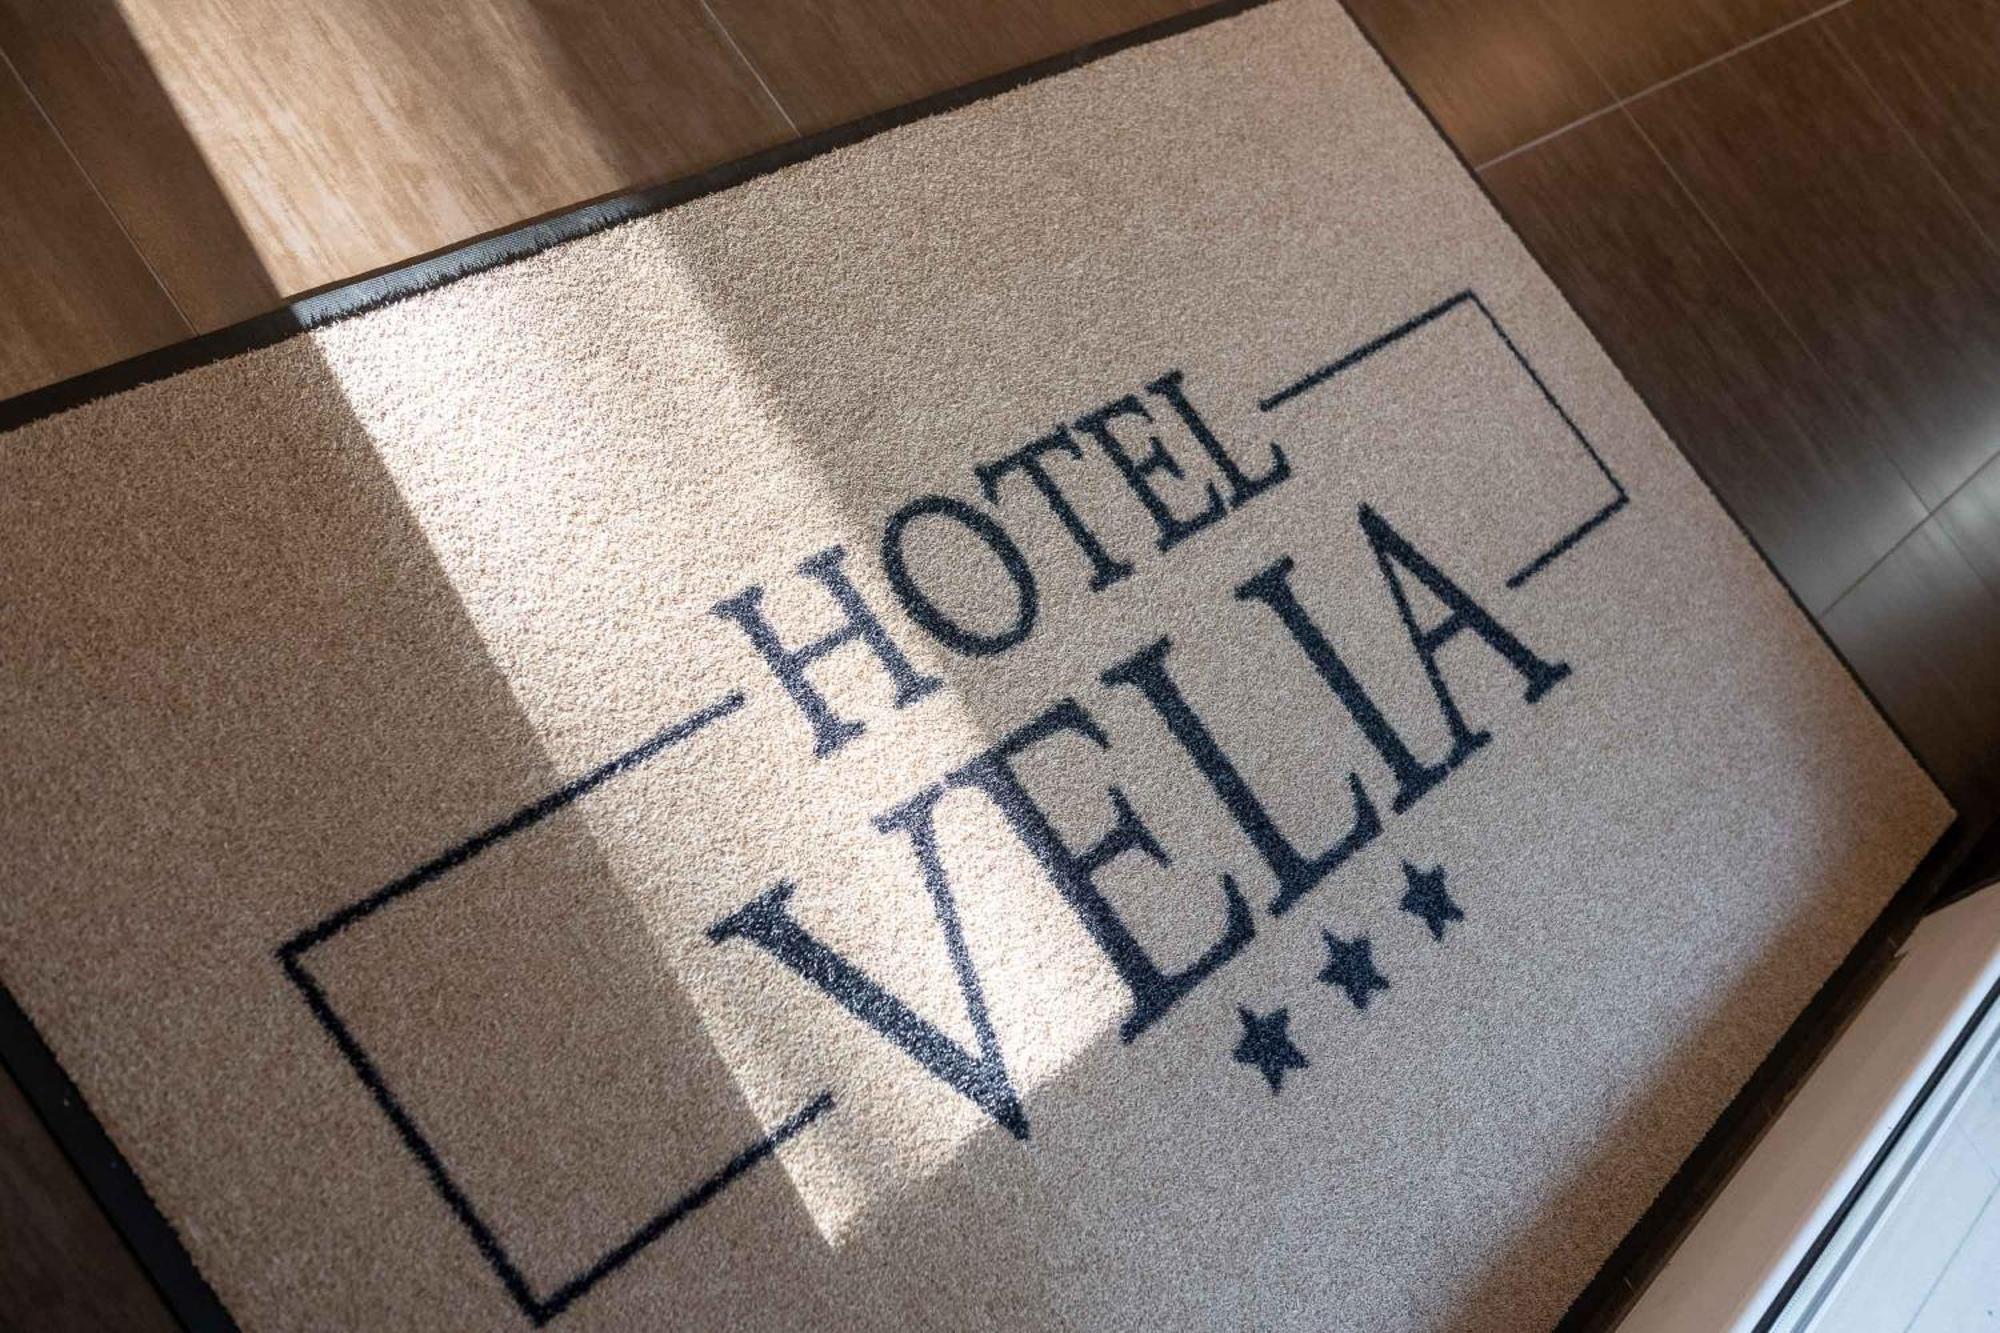 Hotel Velia - hotel completamente nuovo a Grottammare Esterno foto